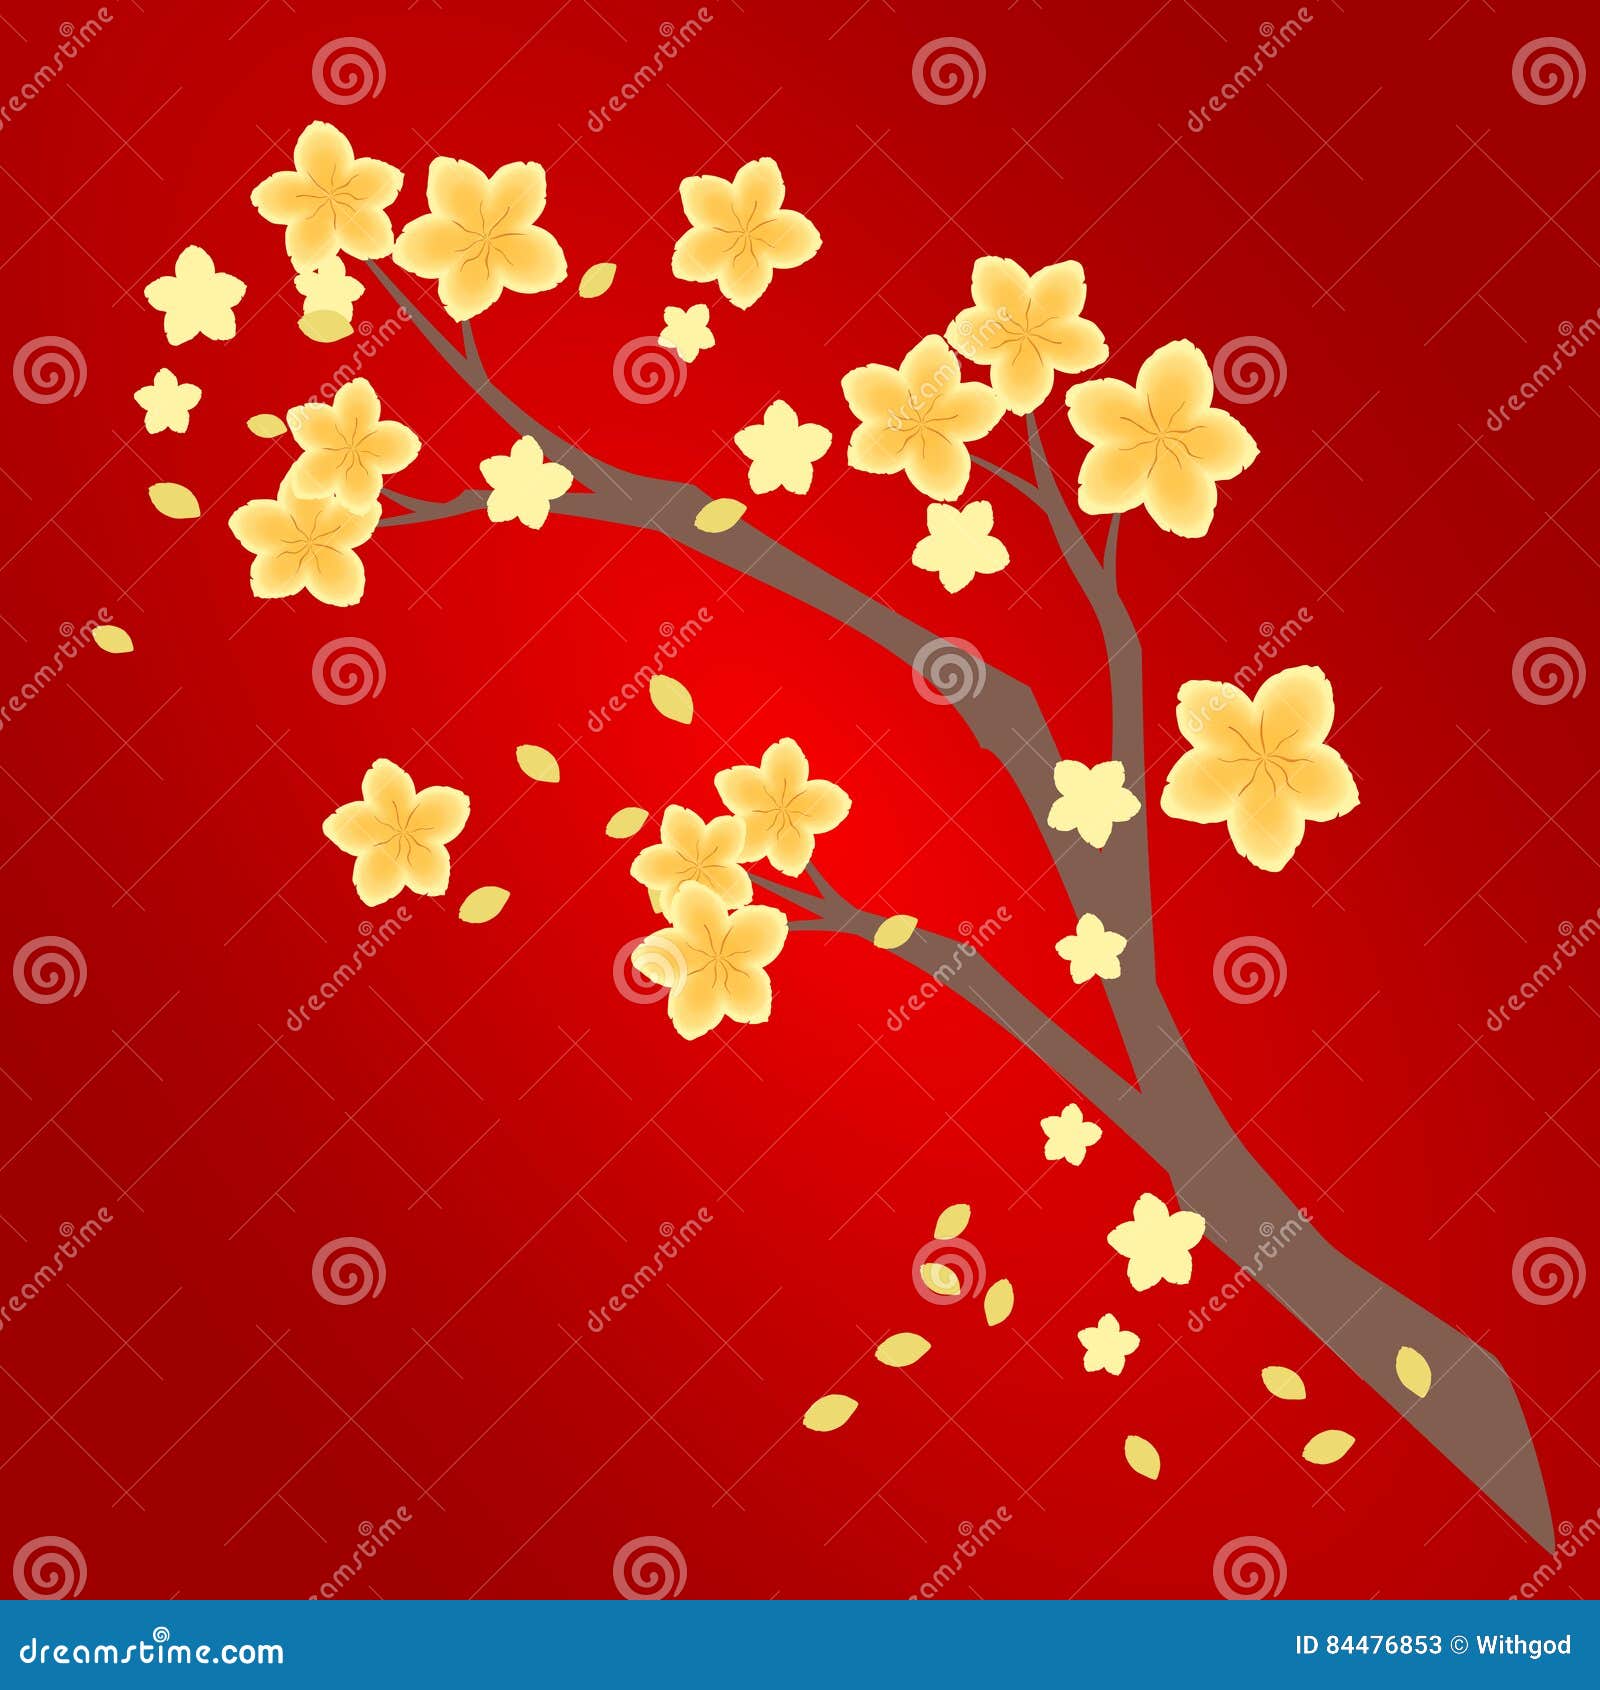 Hãy chiêm ngưỡng vẻ đẹp nổi bật của hoa mai vàng náo nức khi đón chào Tết Nguyên Đán. Hình ảnh sẽ khiến bạn cảm nhận được sức sống và sự trẻ trung của mùa xuân.